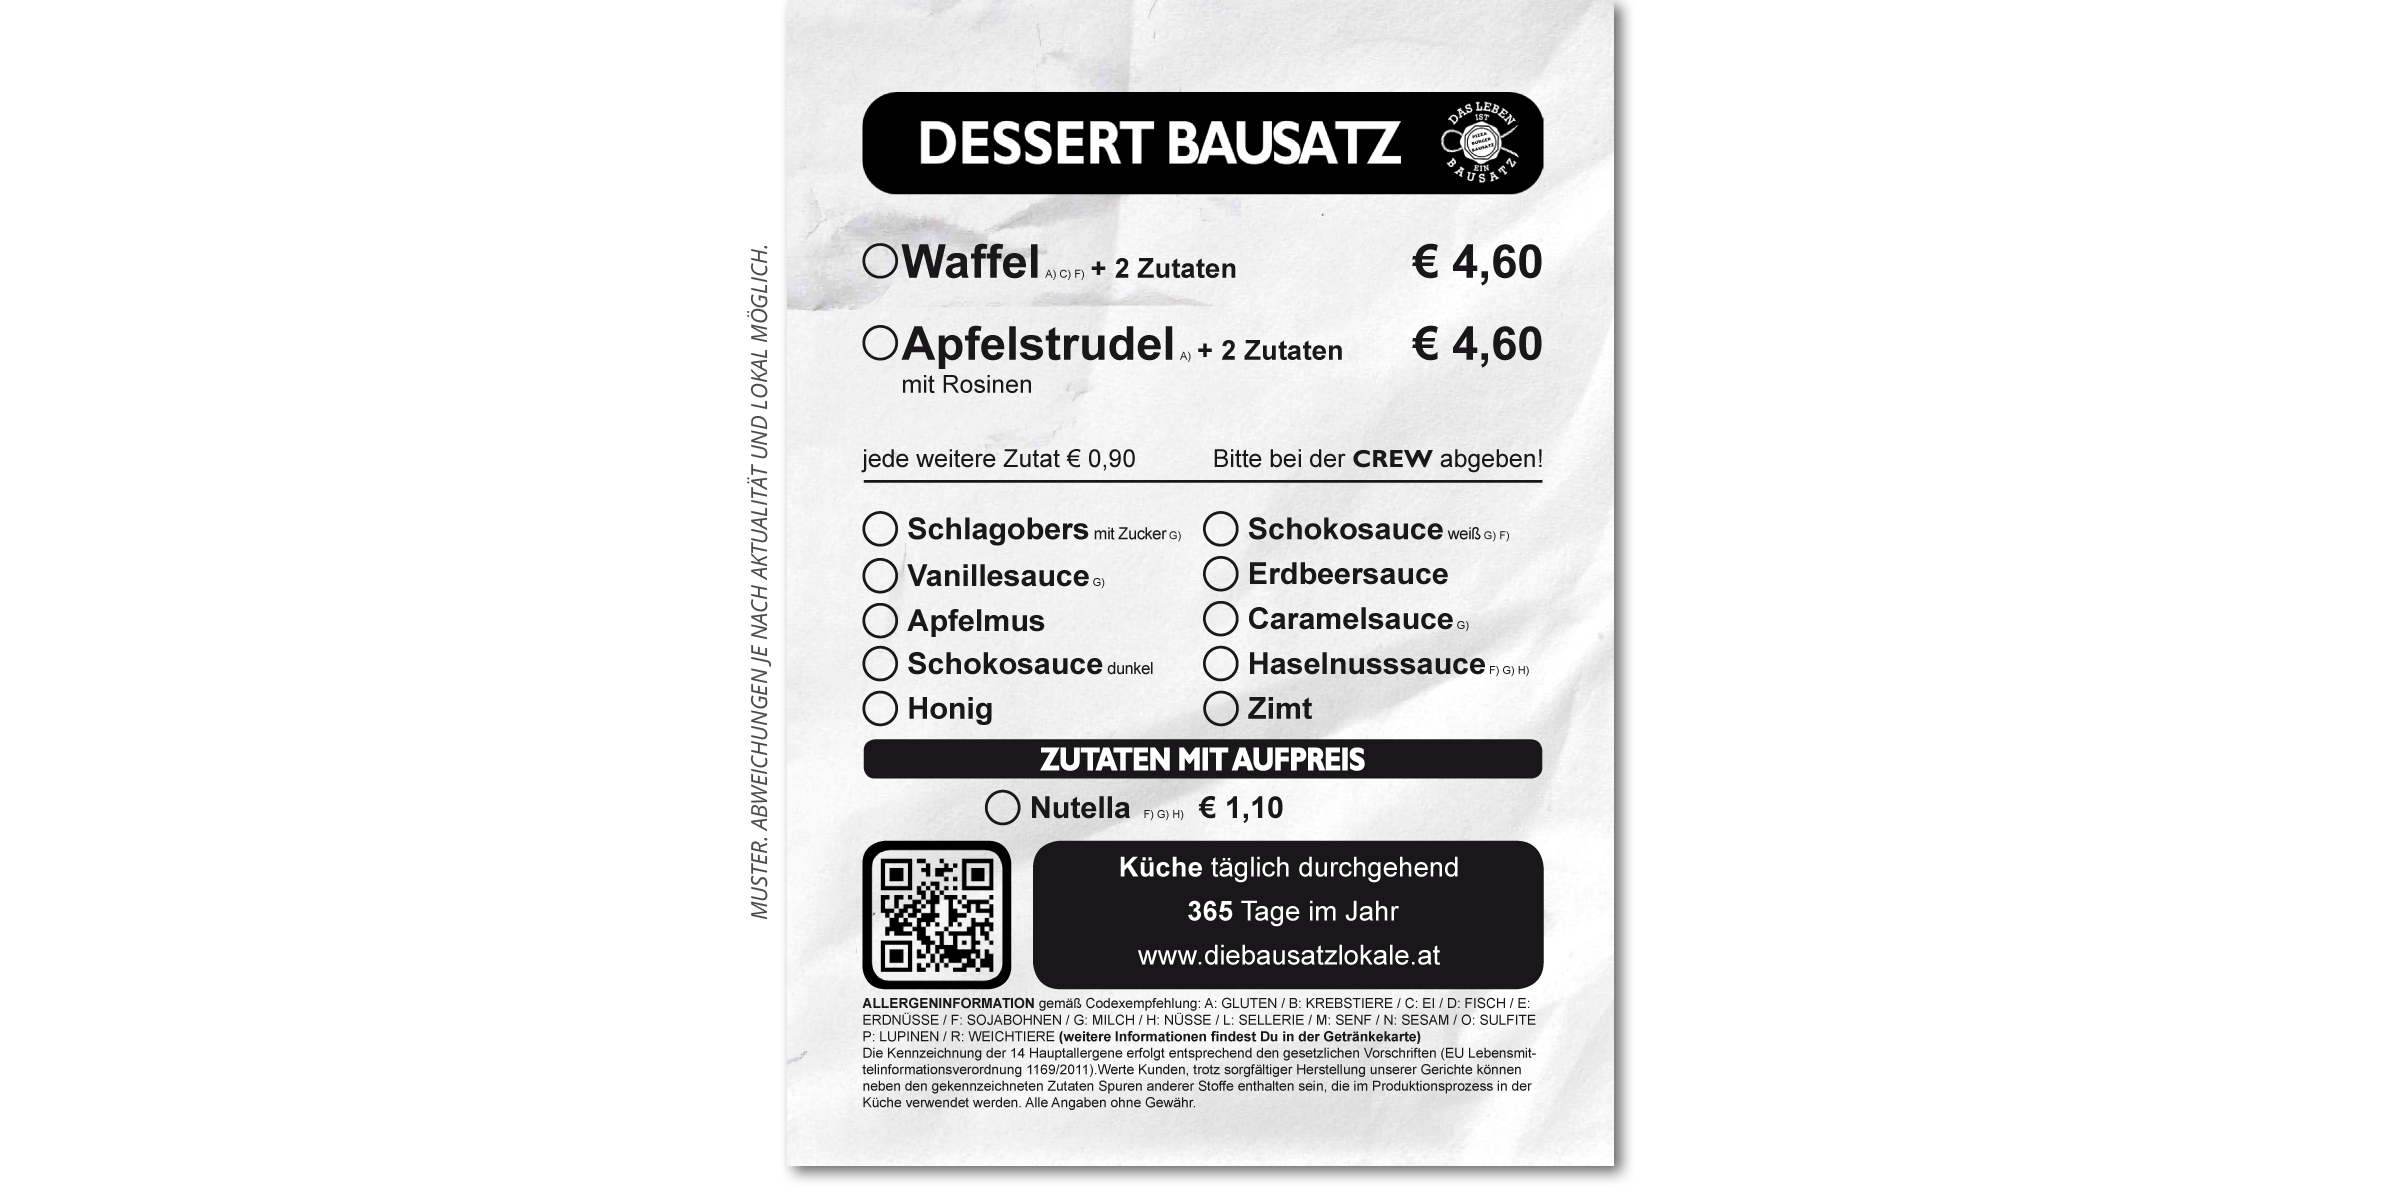 008-Graz-Pizza-Burger-Restaurant-Bausatz-Dessert-Waffel-Apfelstrudel-Uni-Saegewerk-Heinrich